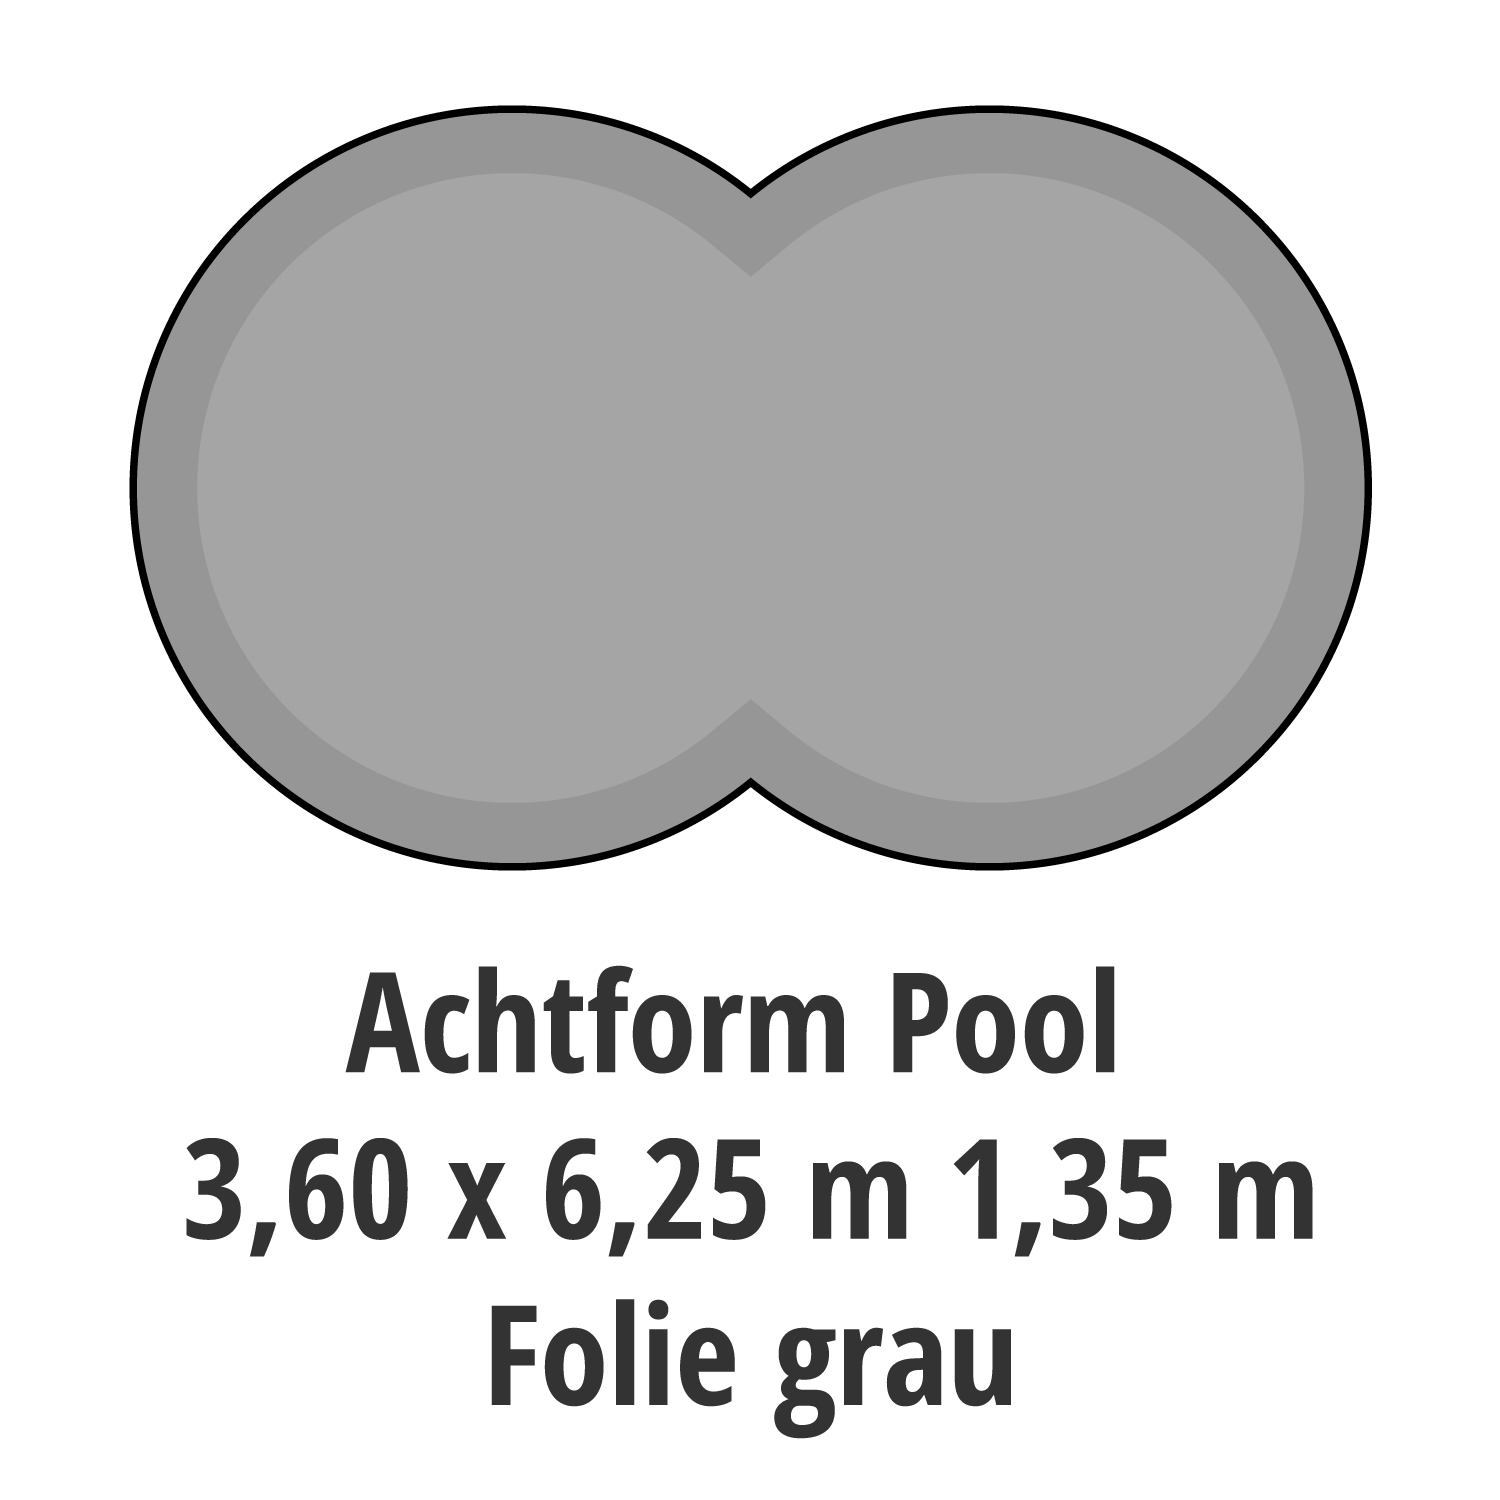 (B-Ware) Achtform Pool, Folie grau 3,60 x 6,25 m 1,35 m